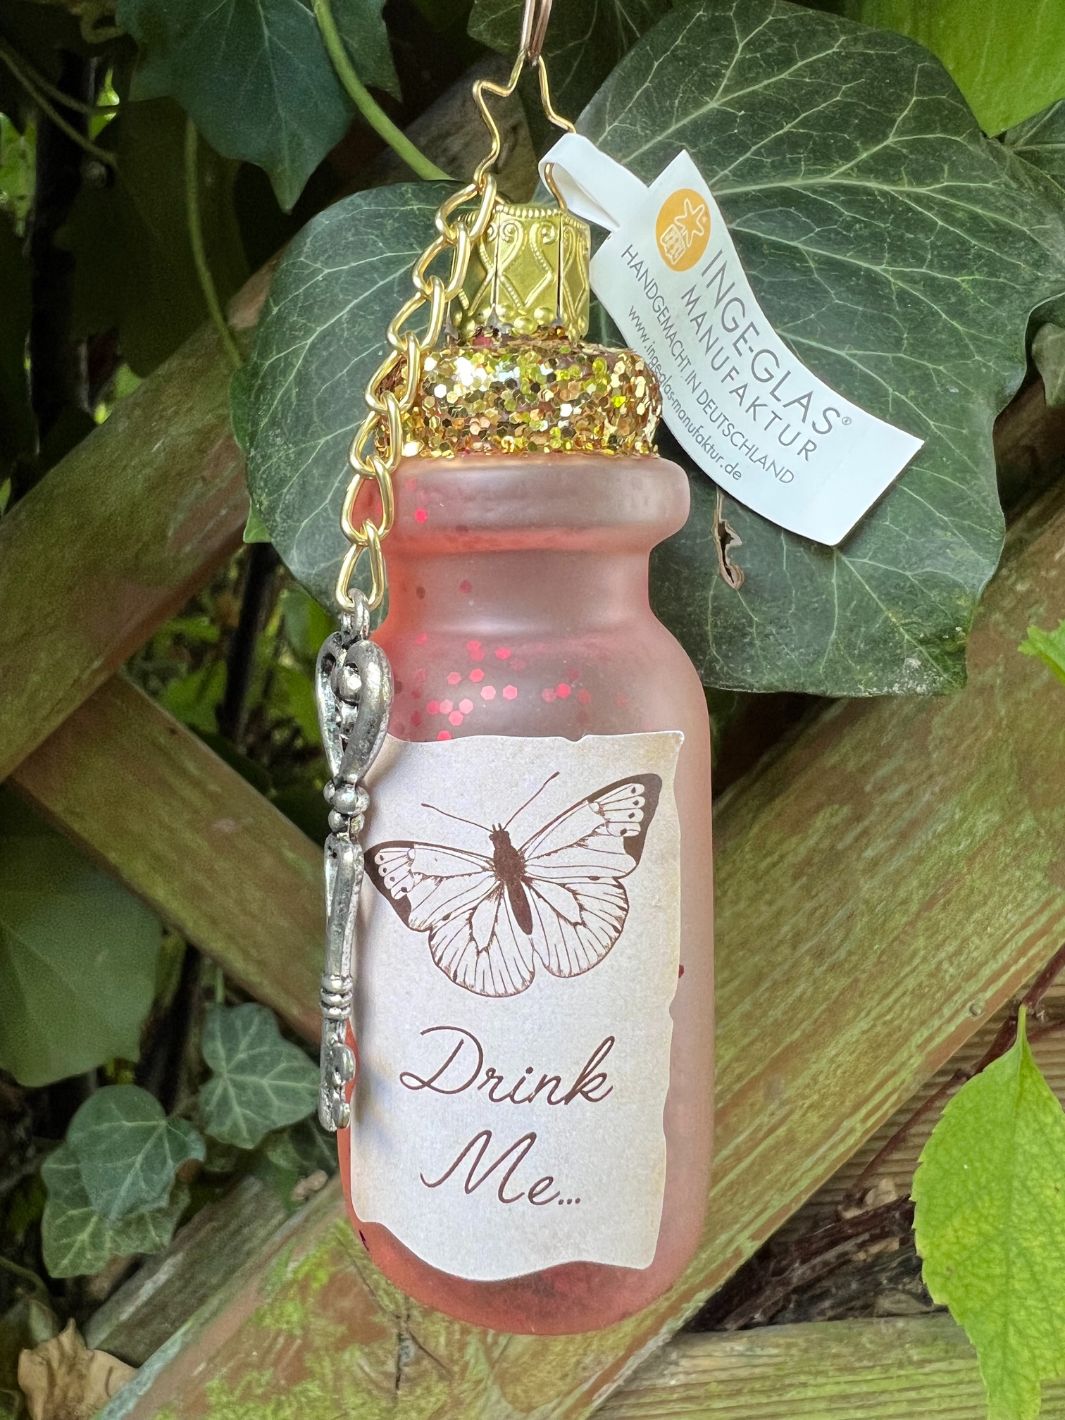 Flasche "Drink me" aus Alice im Wunderland